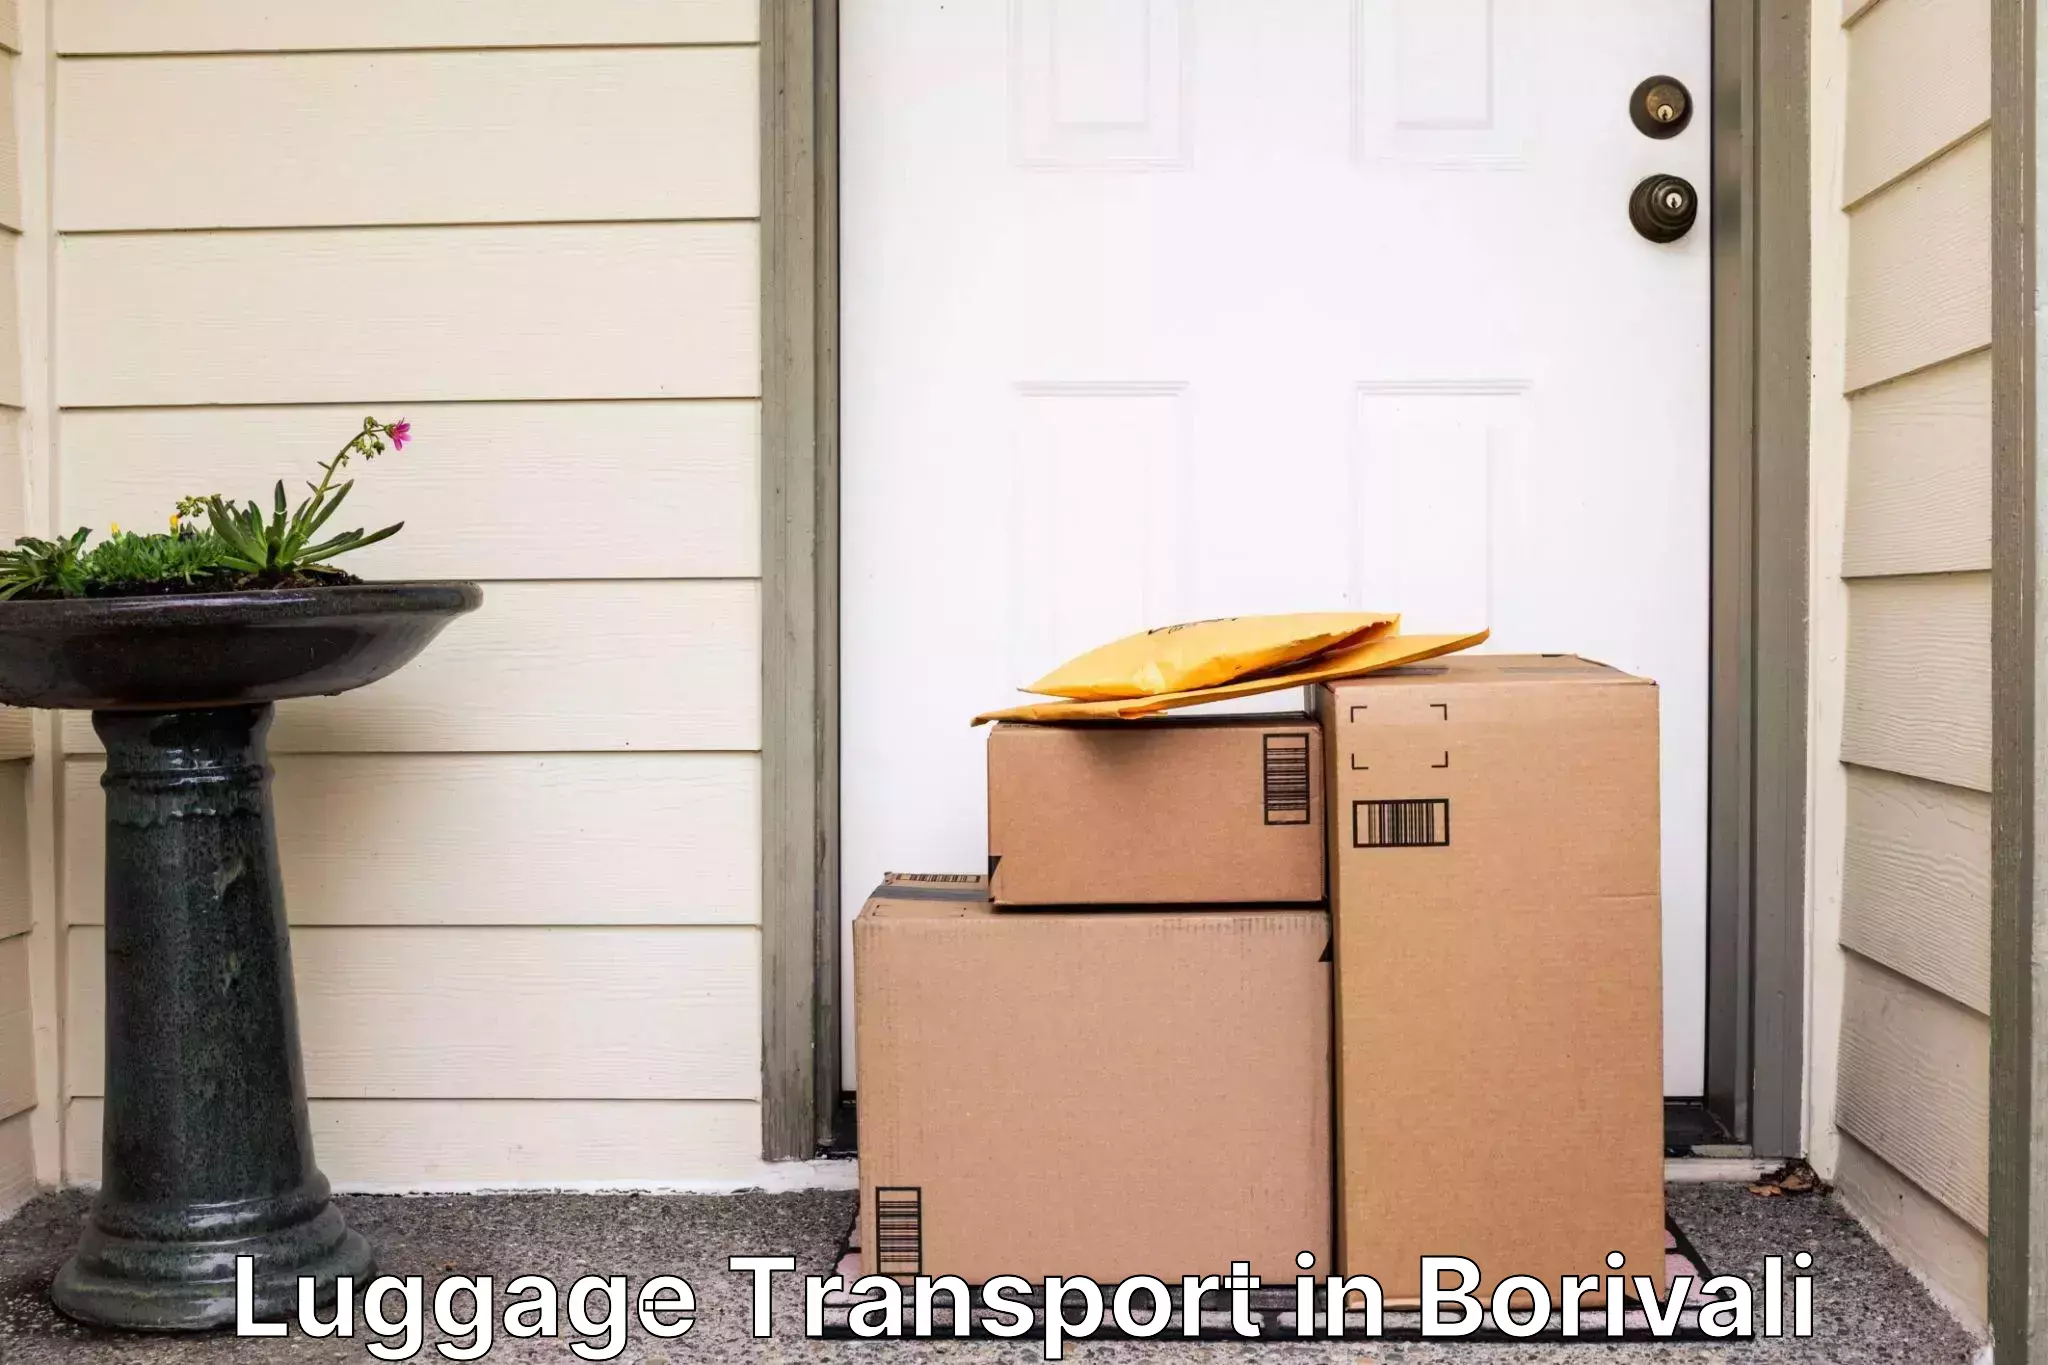 Luggage shipping estimate in Borivali